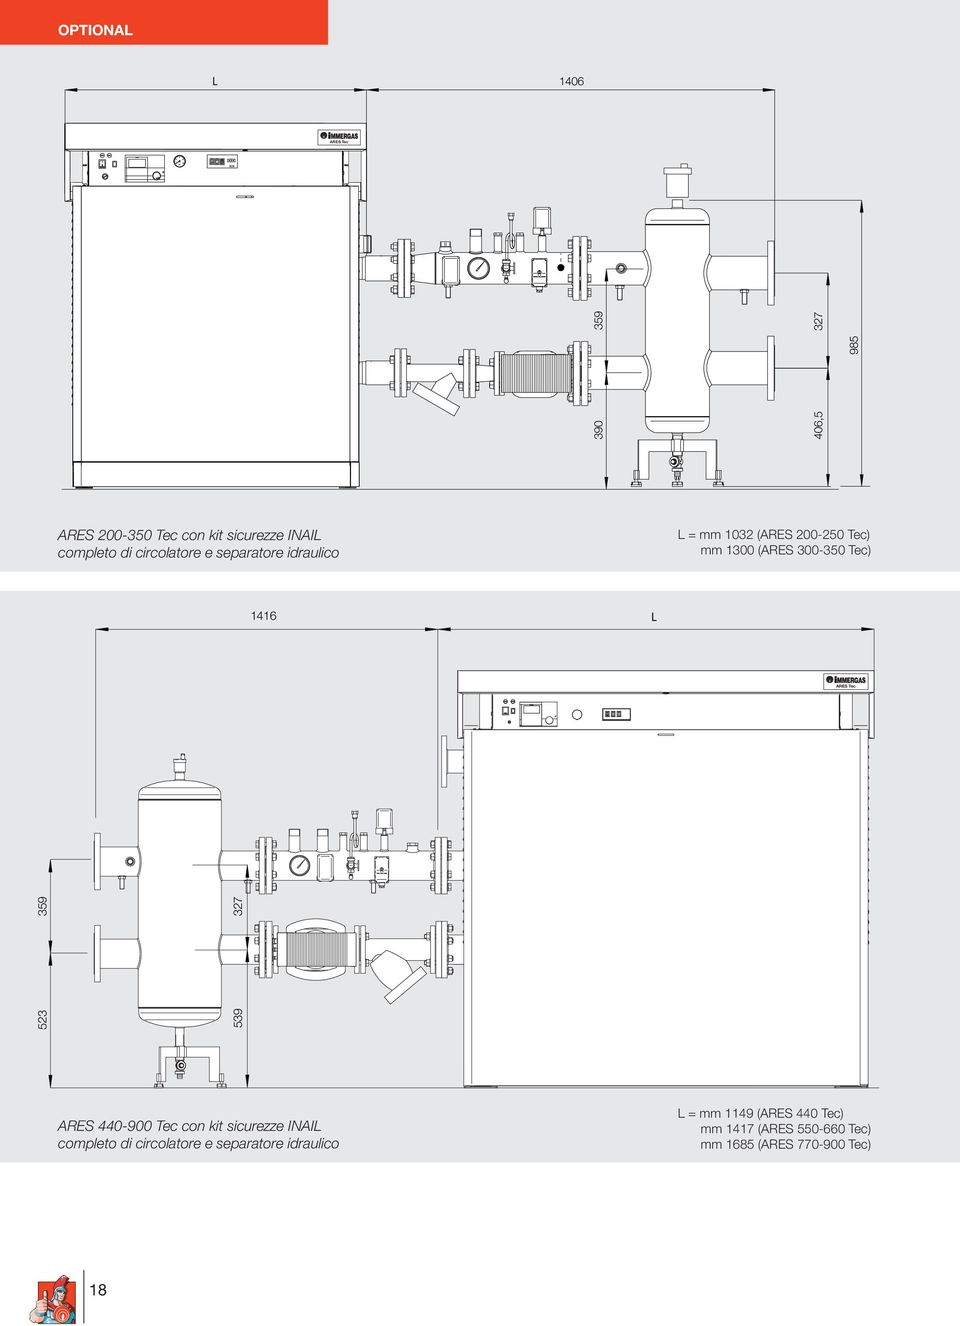 Tec 523 359 539 327 440-900 Tec con kit sicurezze INAIL completo di circolatore e separatore idraulico L= mm 1149 (